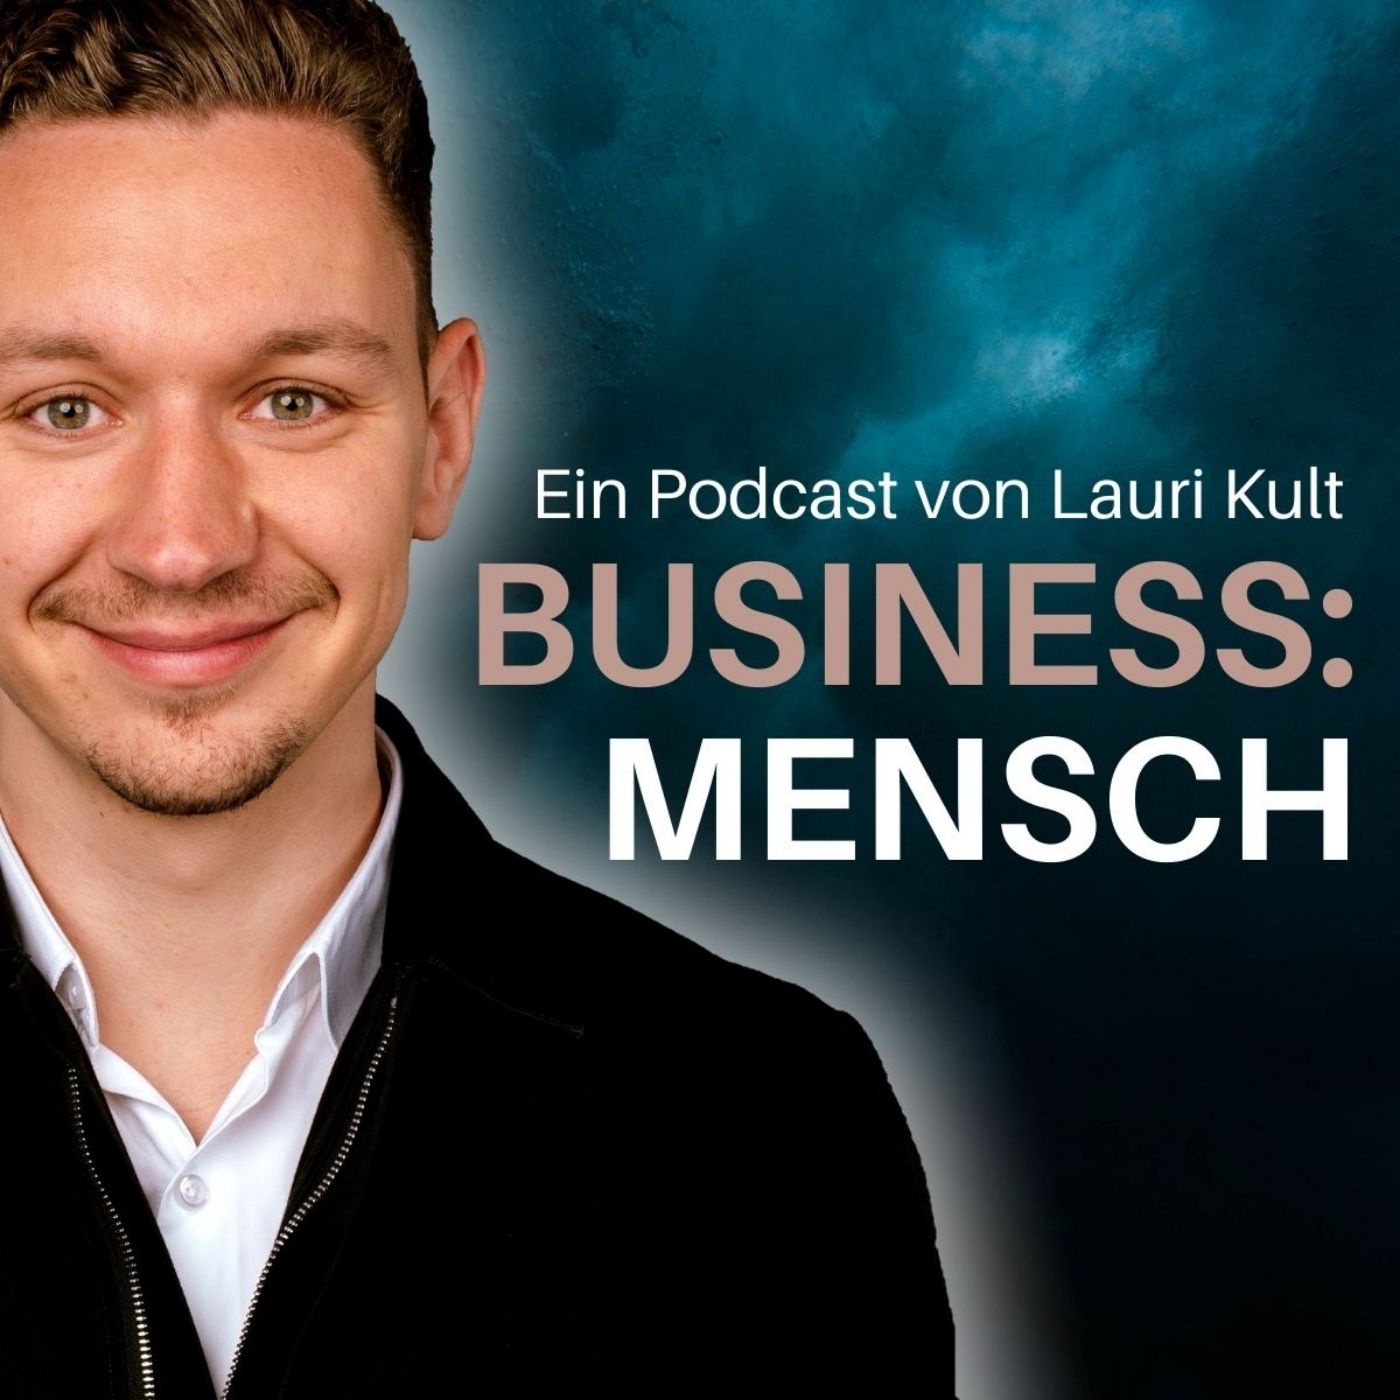 Business: Mensch